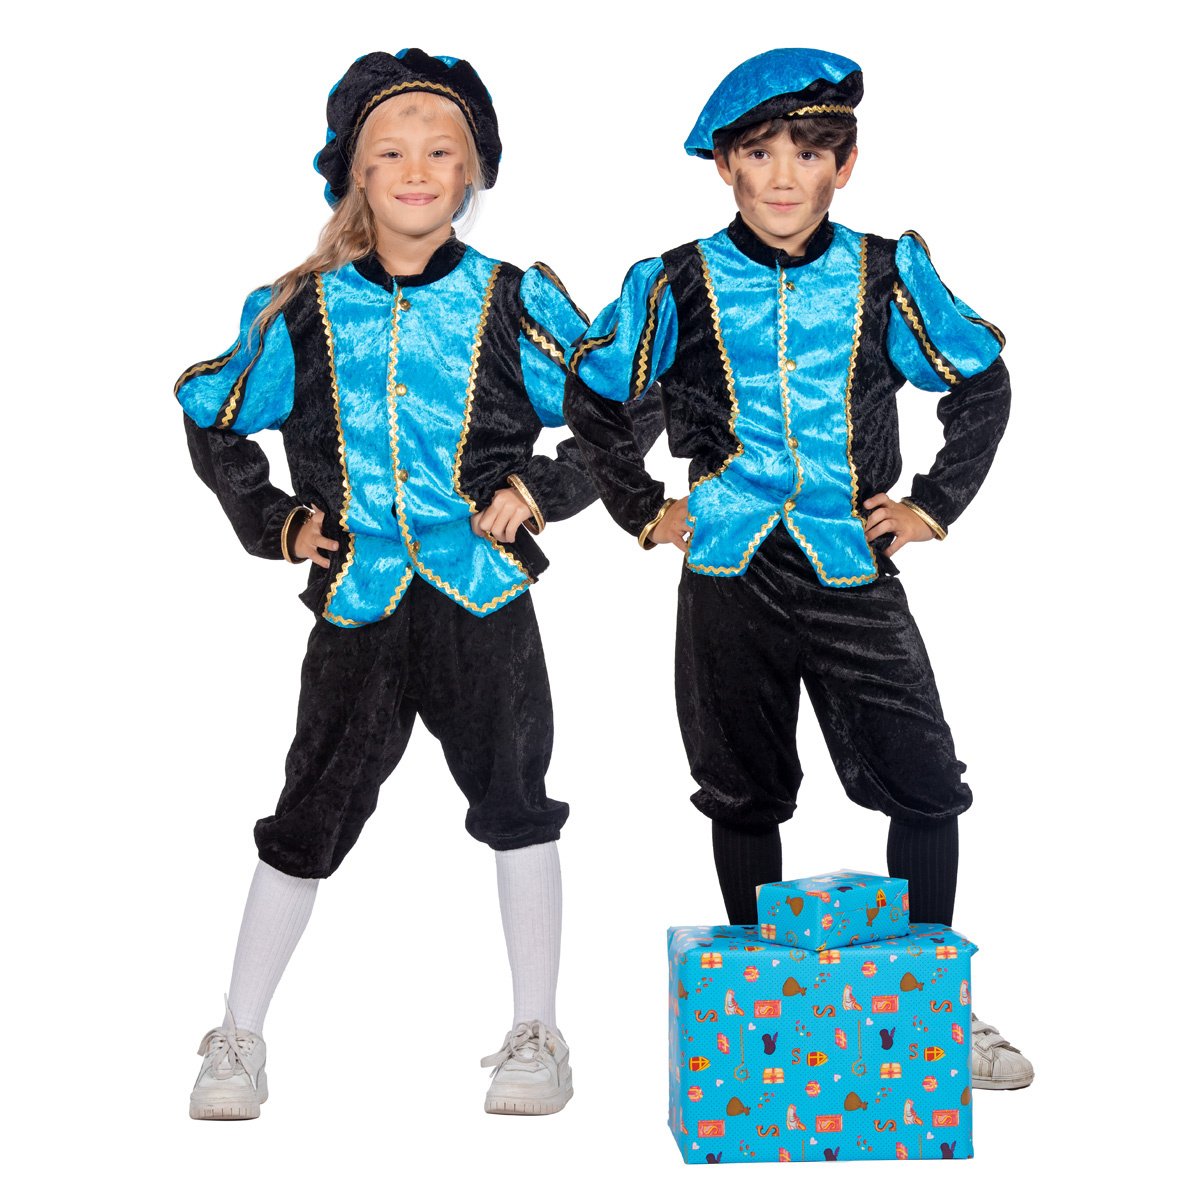 Wilbers & Wilbers - Zwarte Pietenpakken - Vrolijk Pietje Aqua Pietenpak Kind Kostuum - Blauw - Maat 128 - Sinterklaas - Verkleedkleding